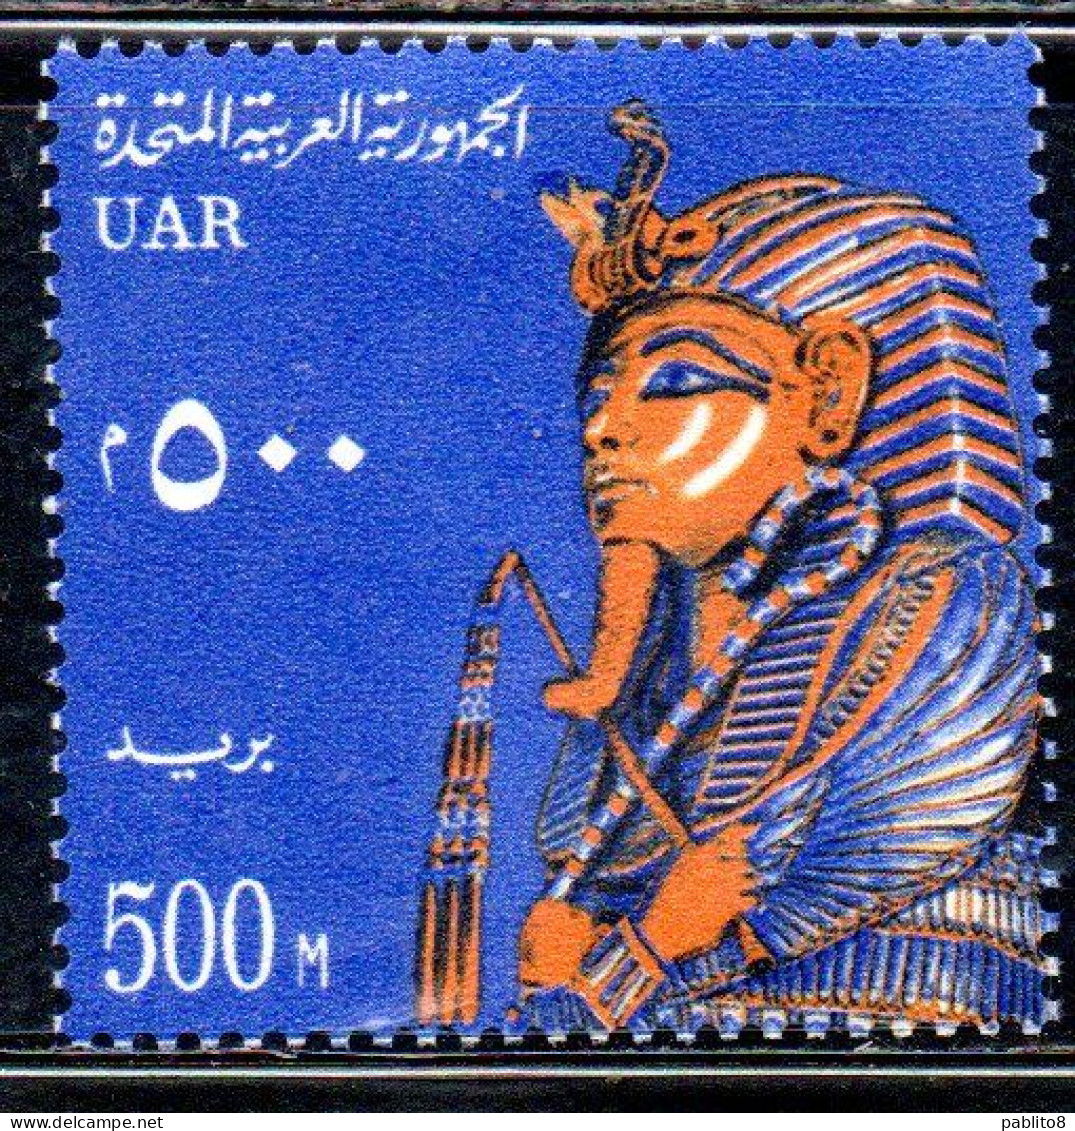 UAR EGYPT EGITTO 1964 1967 FUNERARI MASK C.F.TUTANKHAMEN 500m MNH - Nuovi